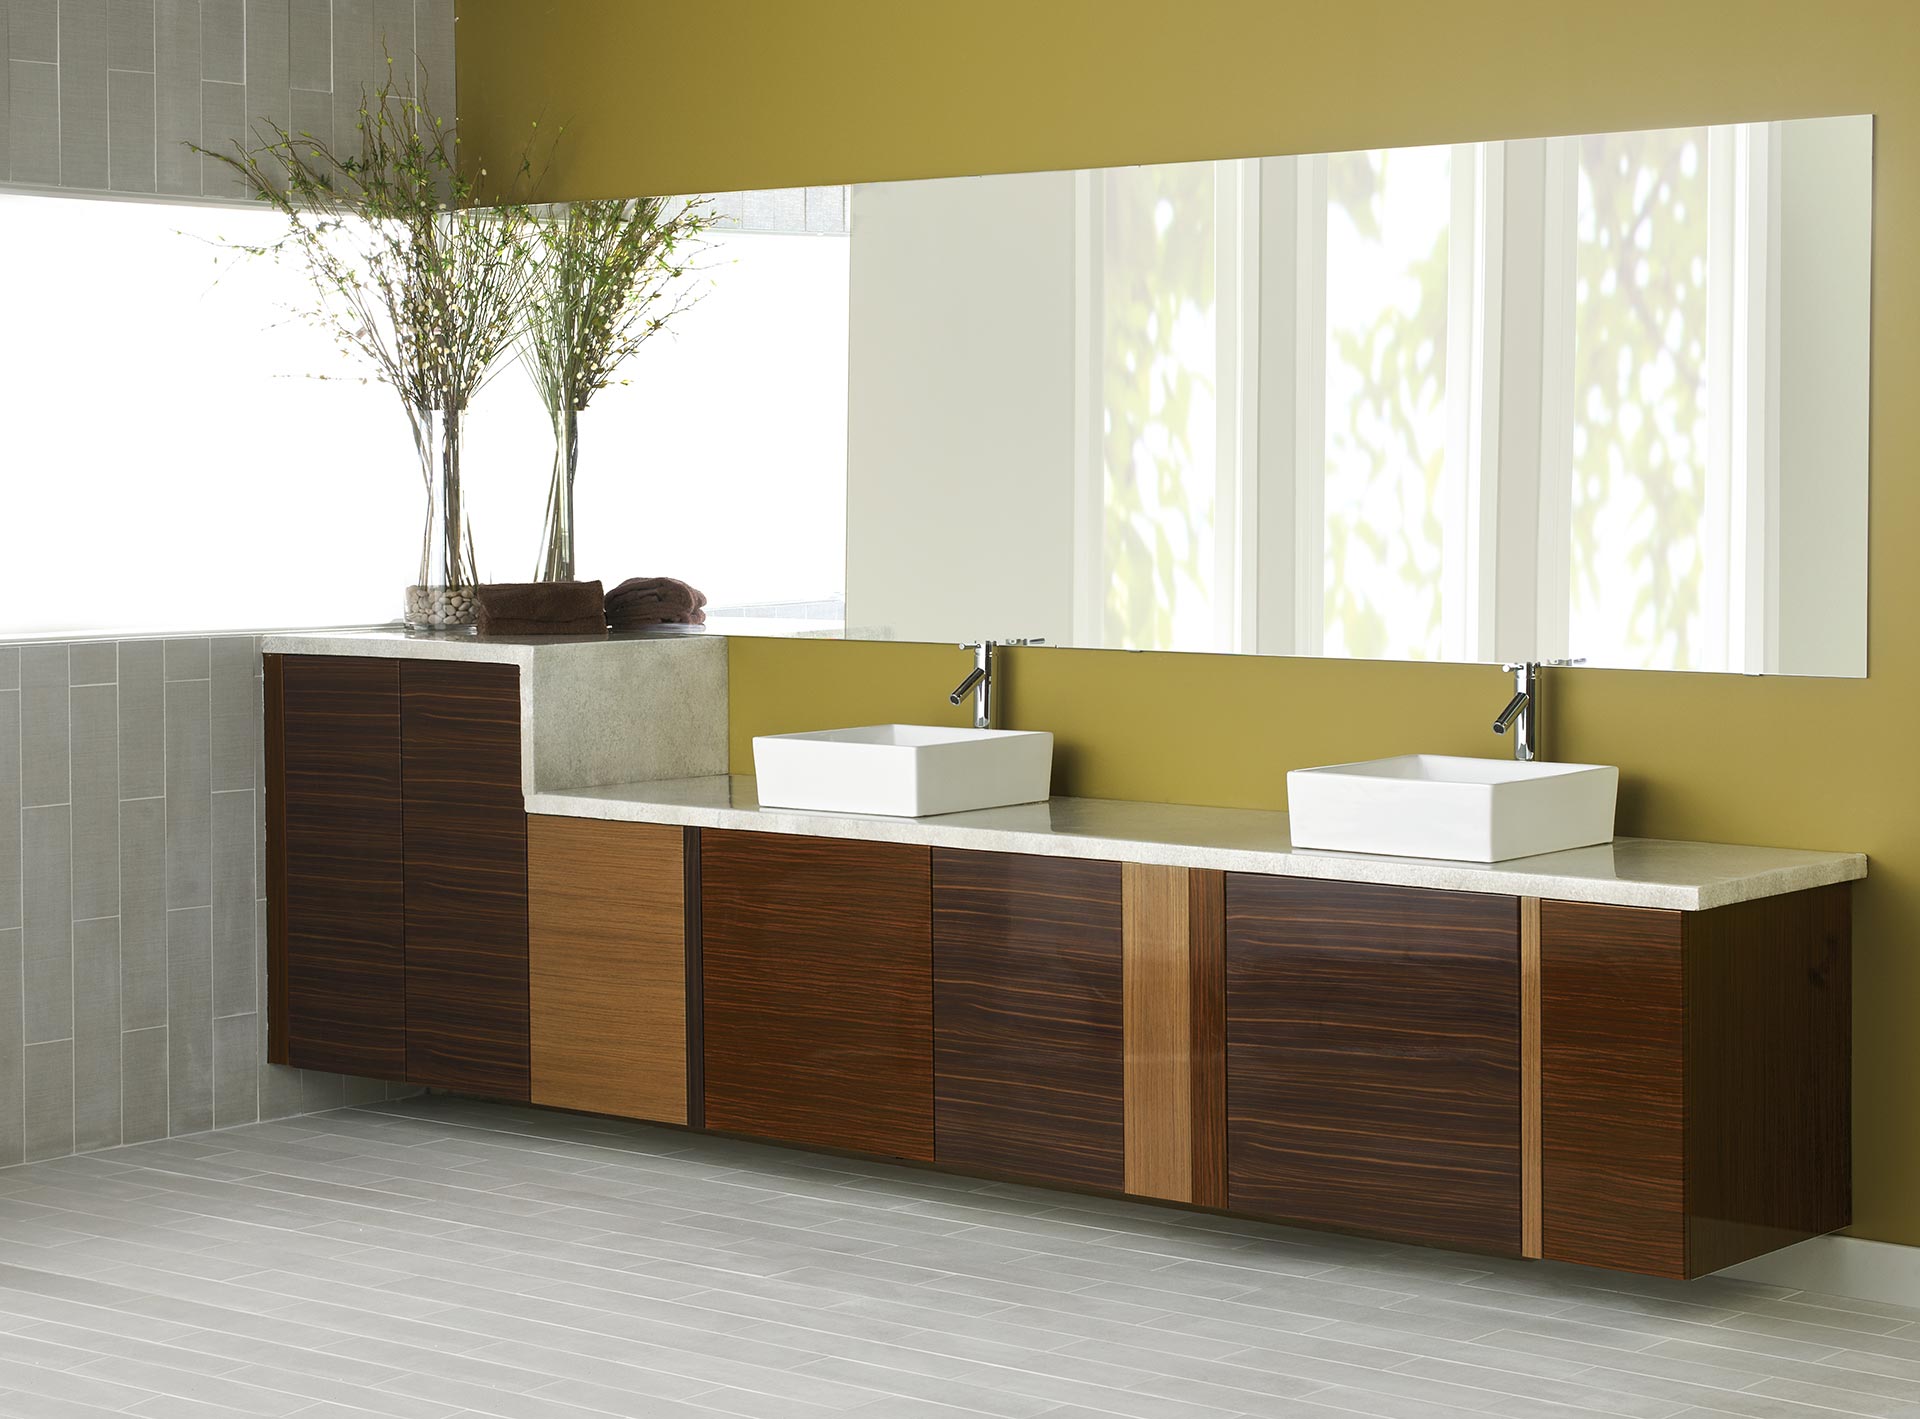 http://distinctivekitchens.com/wp-content/uploads/2020/10/K3-modern-woodgrain-bathroom-cabinets-kitchencraft-distinctive-kitchens.jpg